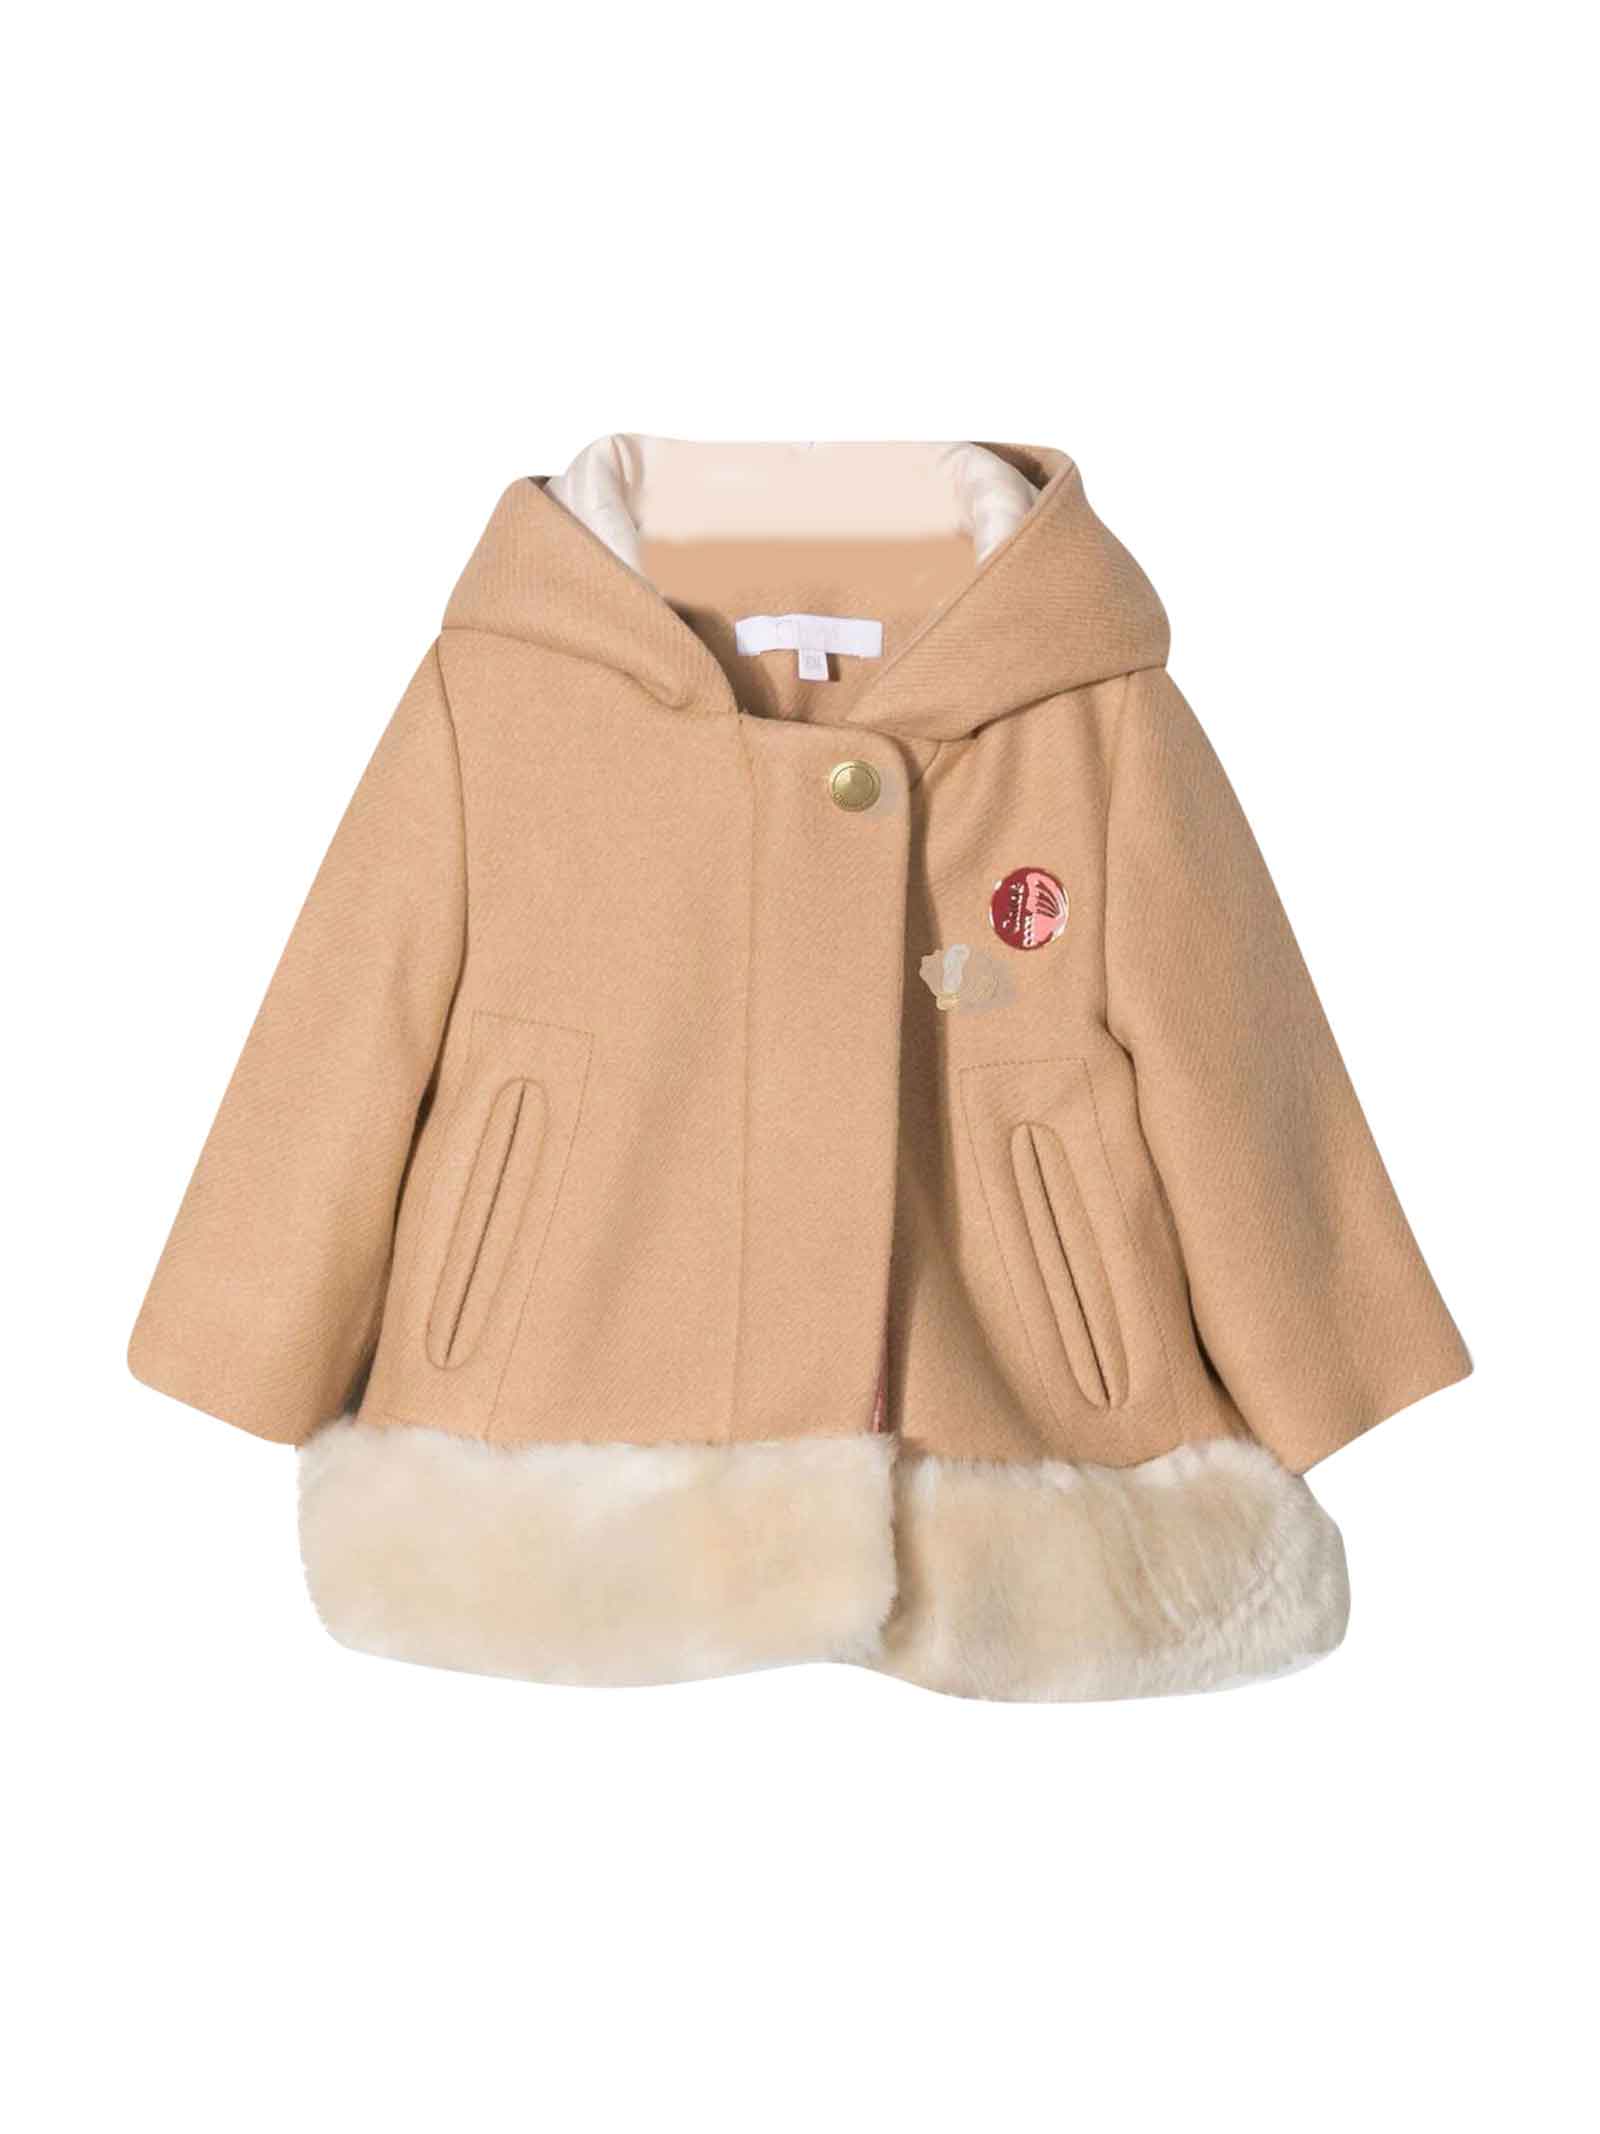 Chloé Brown Hooded Coat By Chloe Kids